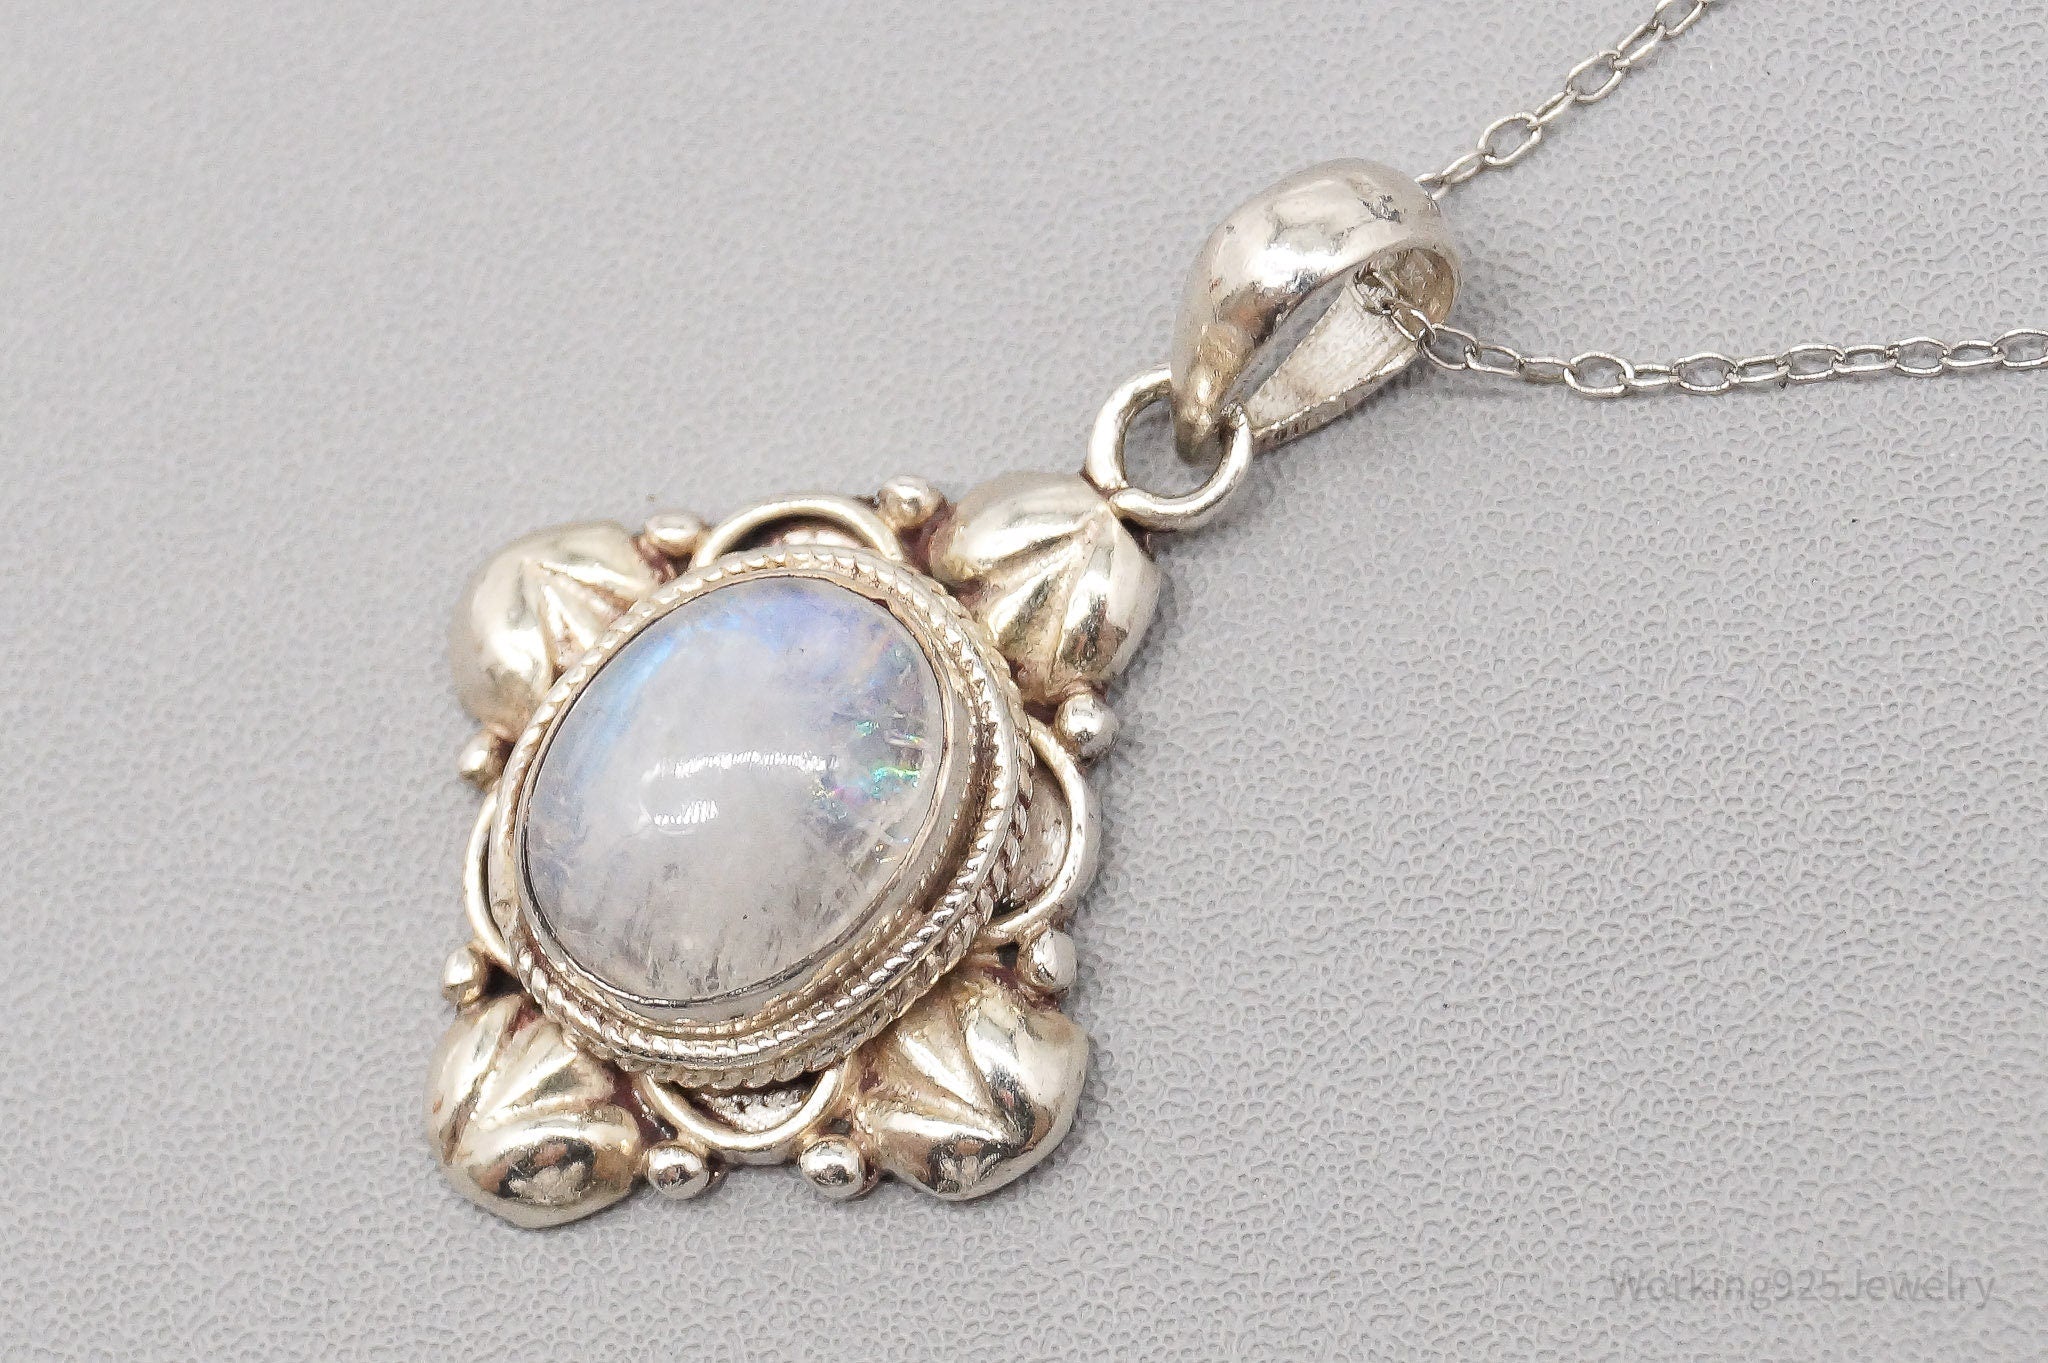 Vintage Moonstone Ornate Sterling Silver Necklace - 20"